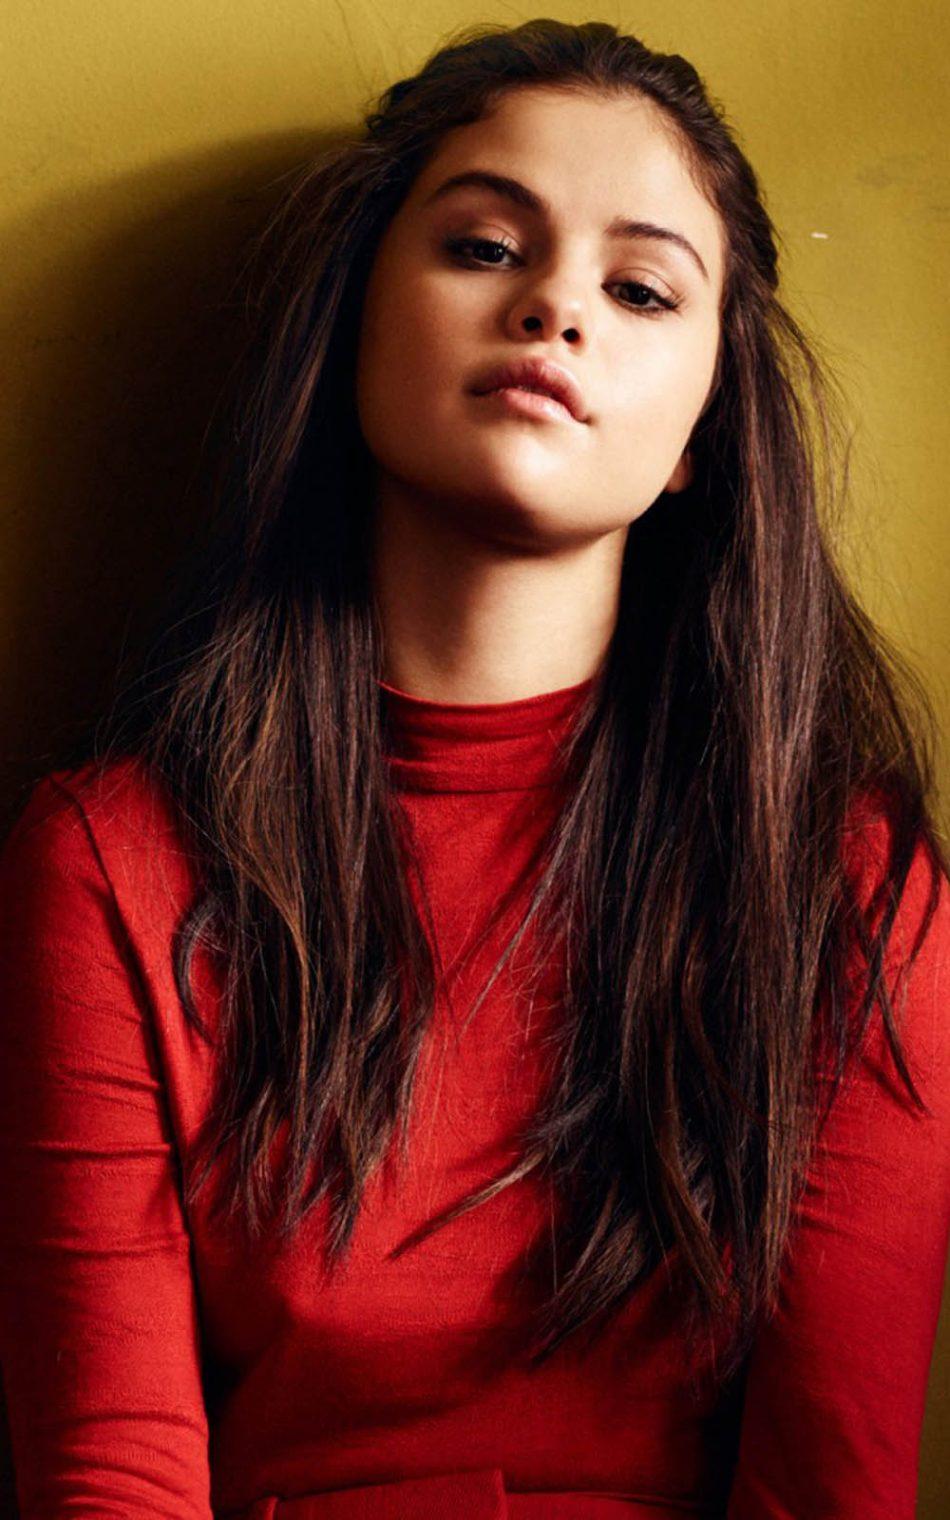 Cute Selena Gomez In Red Dress 4K Ultra HD Mobile Wallpaper